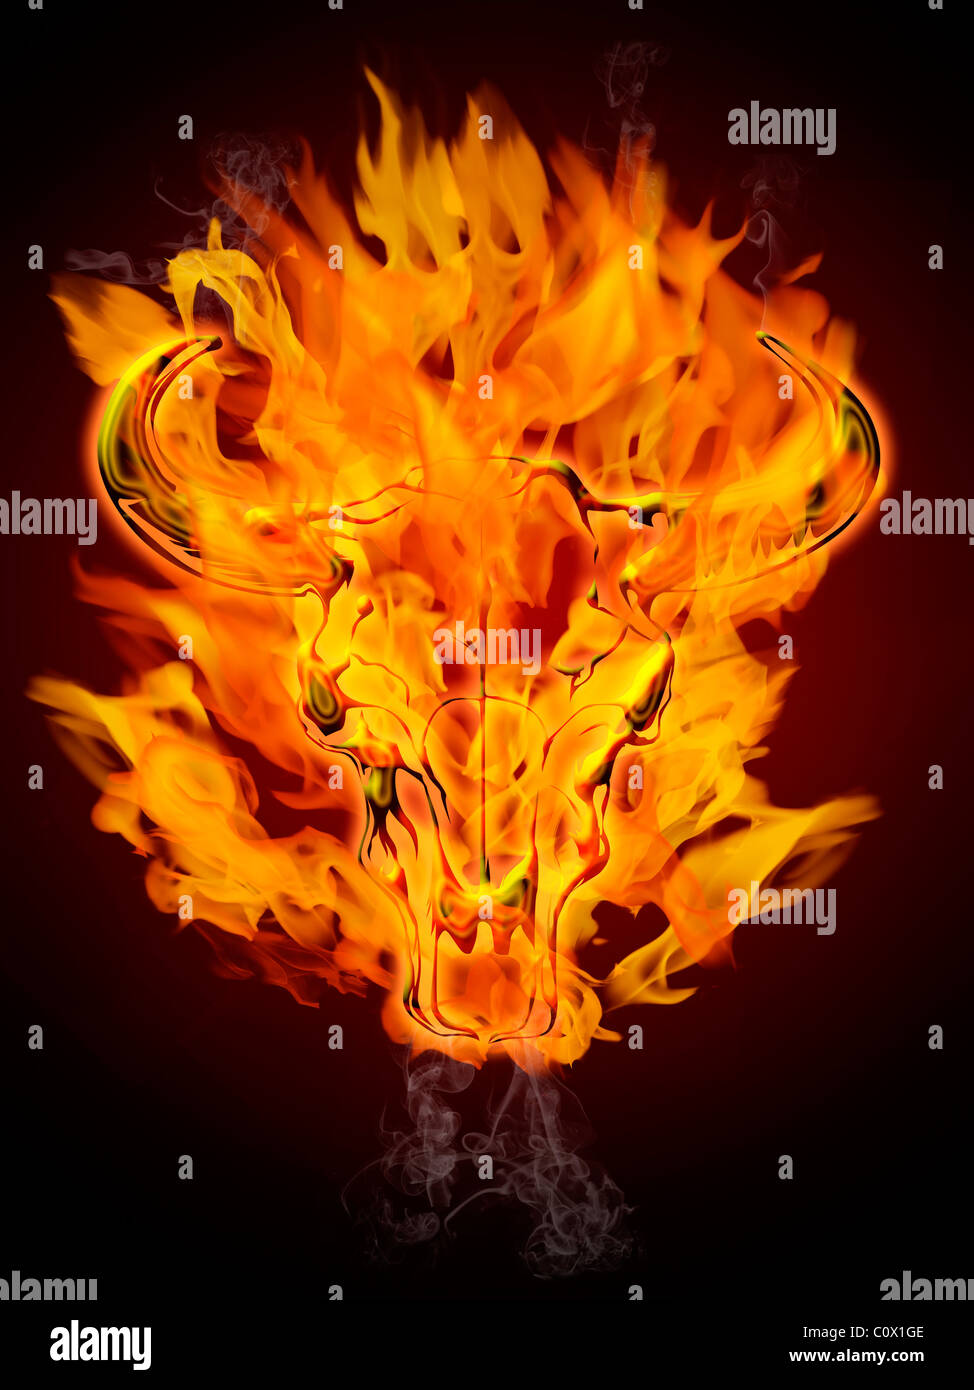 Bull Kuh Schädel in brennenden Feuer Flammen und Rauch Stockfoto